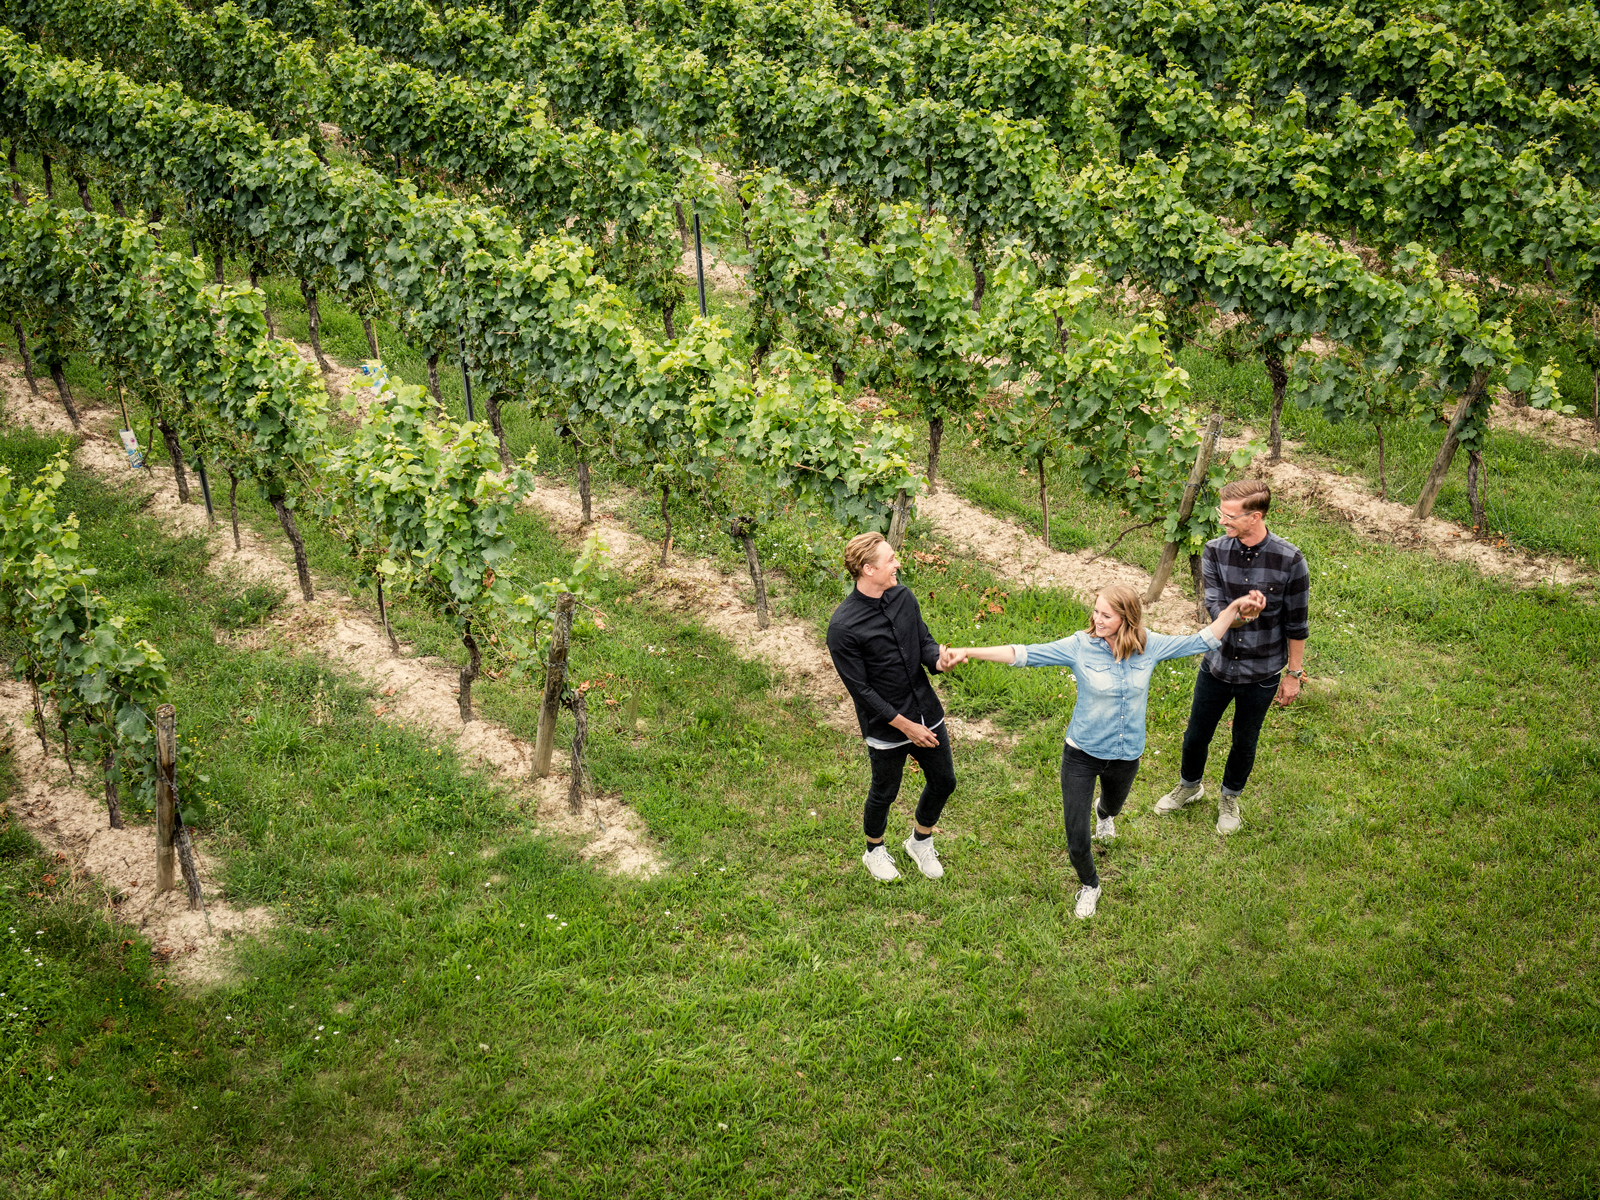 III Freunde wine - Joko Winterscheidt, Matthias Schweighöfer und Juliane Eller